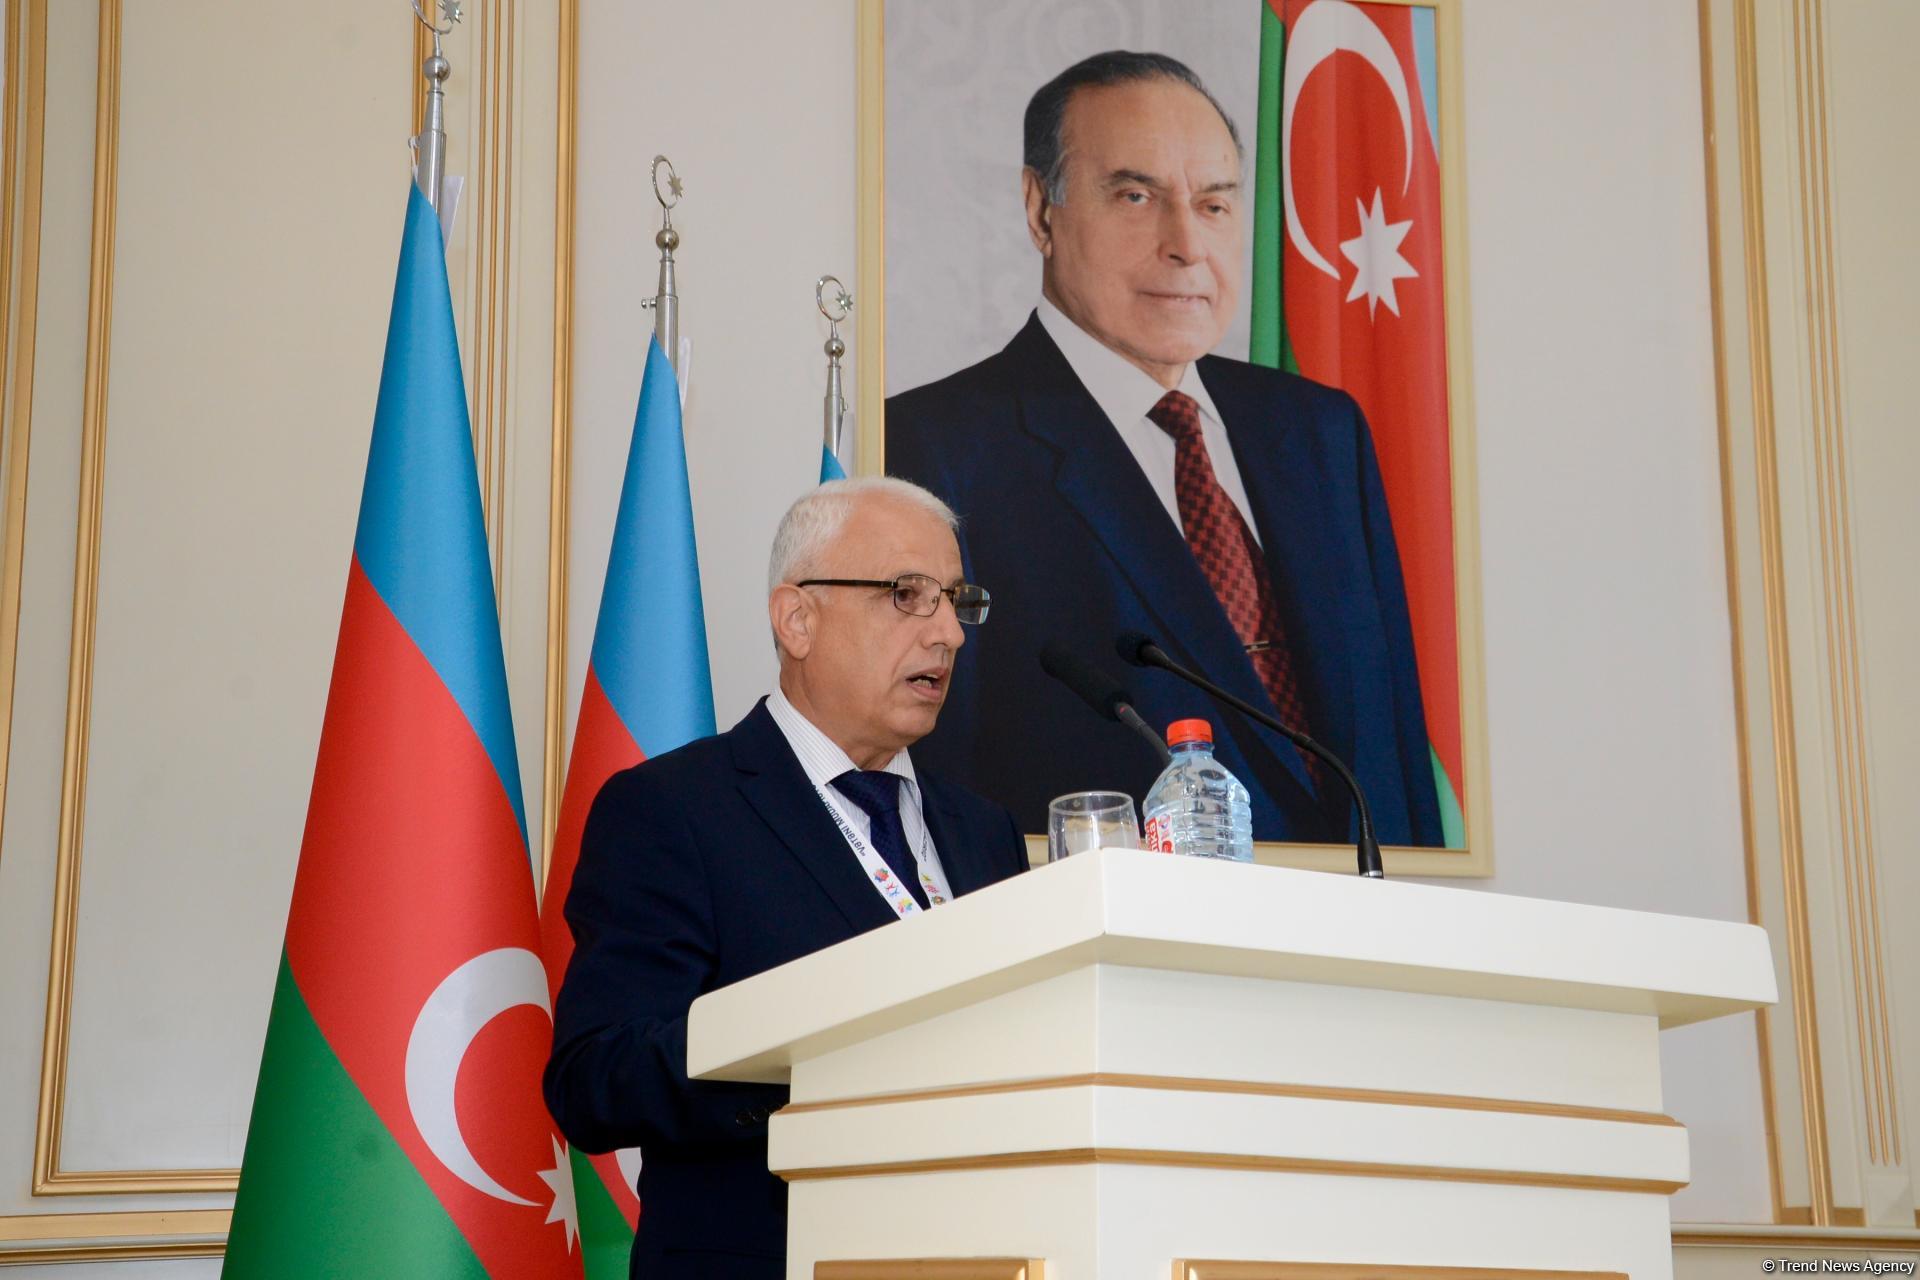 В Азербайджане без вести пропавшими зарегистрированы более 3800 человек - Госкомиссия